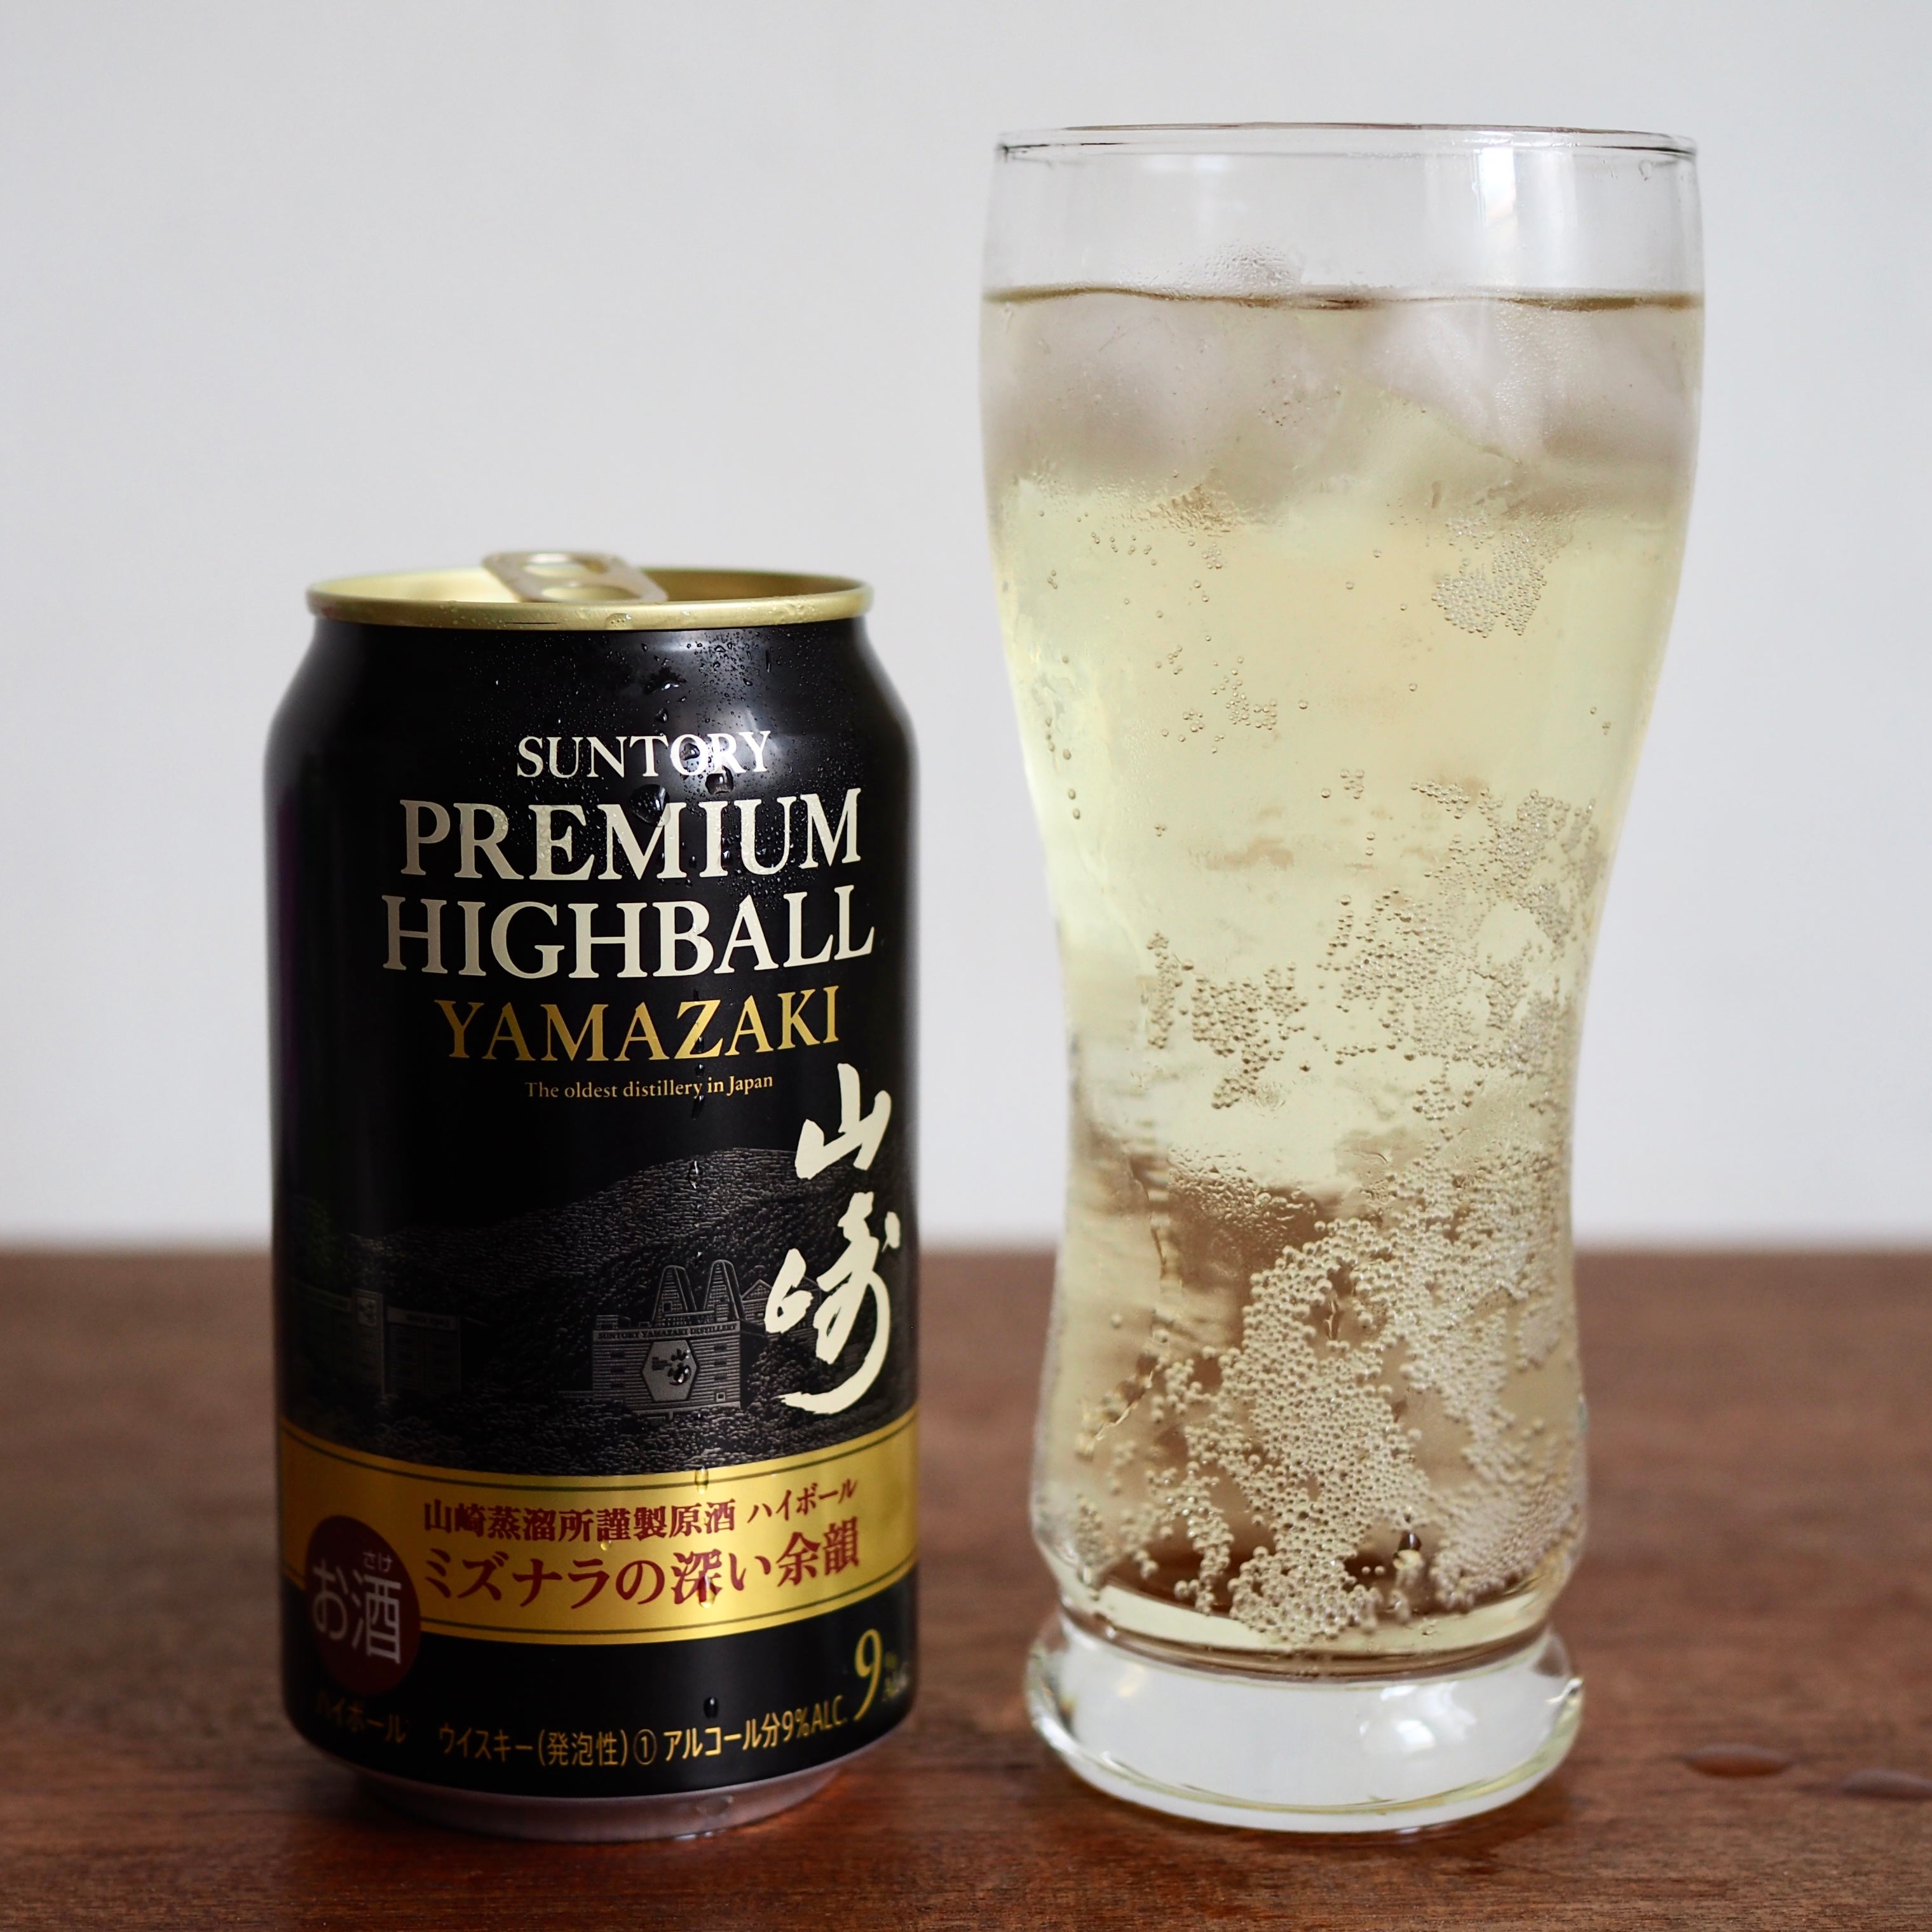 Review] Yamazaki Highball - Suntory Premium Highball, 9% ABV – 88 